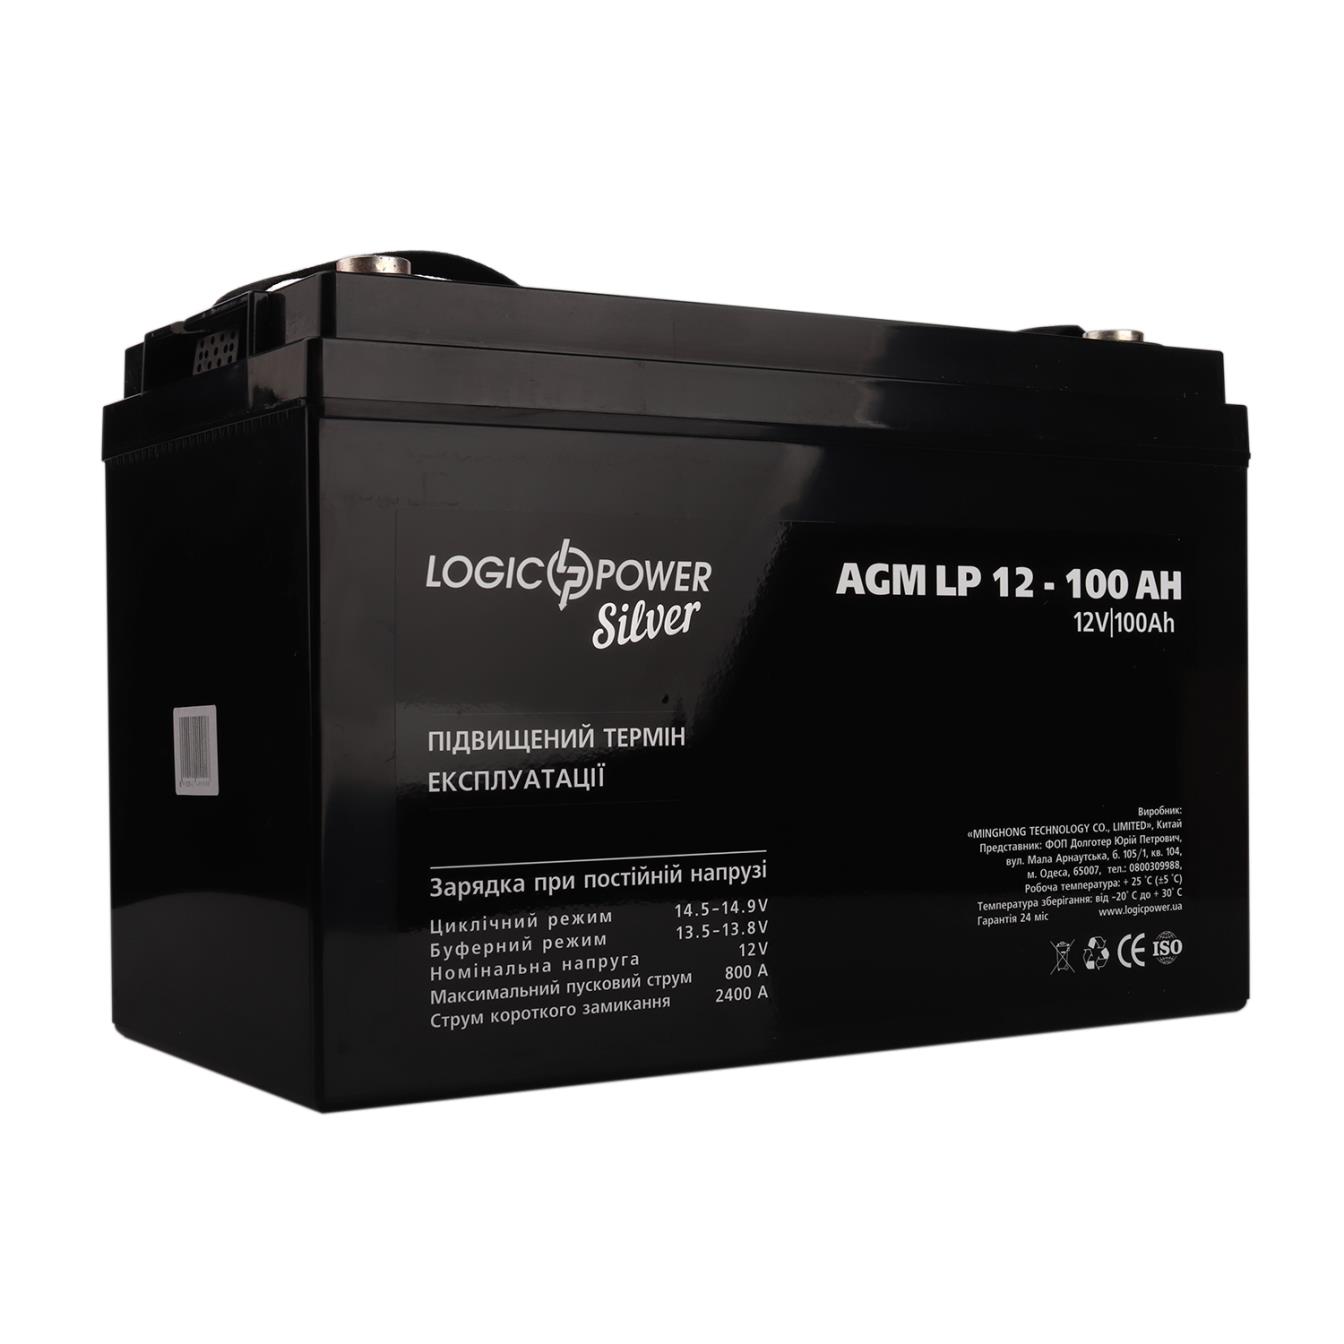 Акумулятор свинцево-кислотний LogicPower AGM LP 12V - 100 Ah Silver (4240)